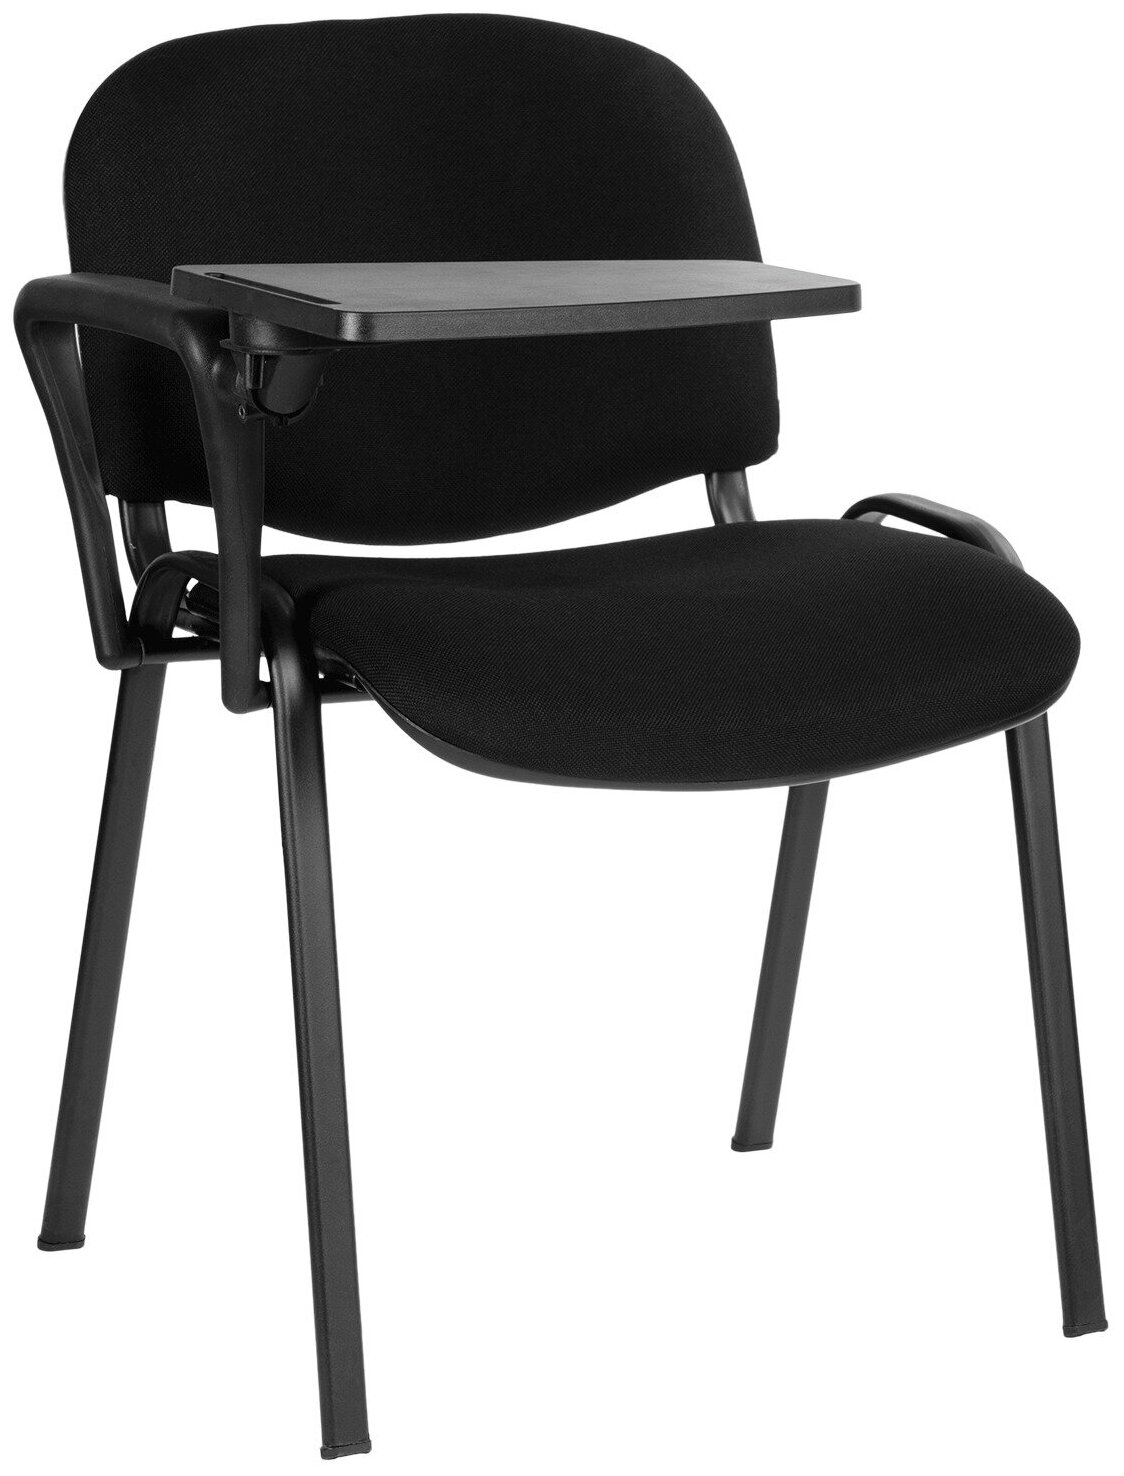 Пюпитр для стула КНР "Изо", поверхность 35х26 см, складной, пластик, металл, черный